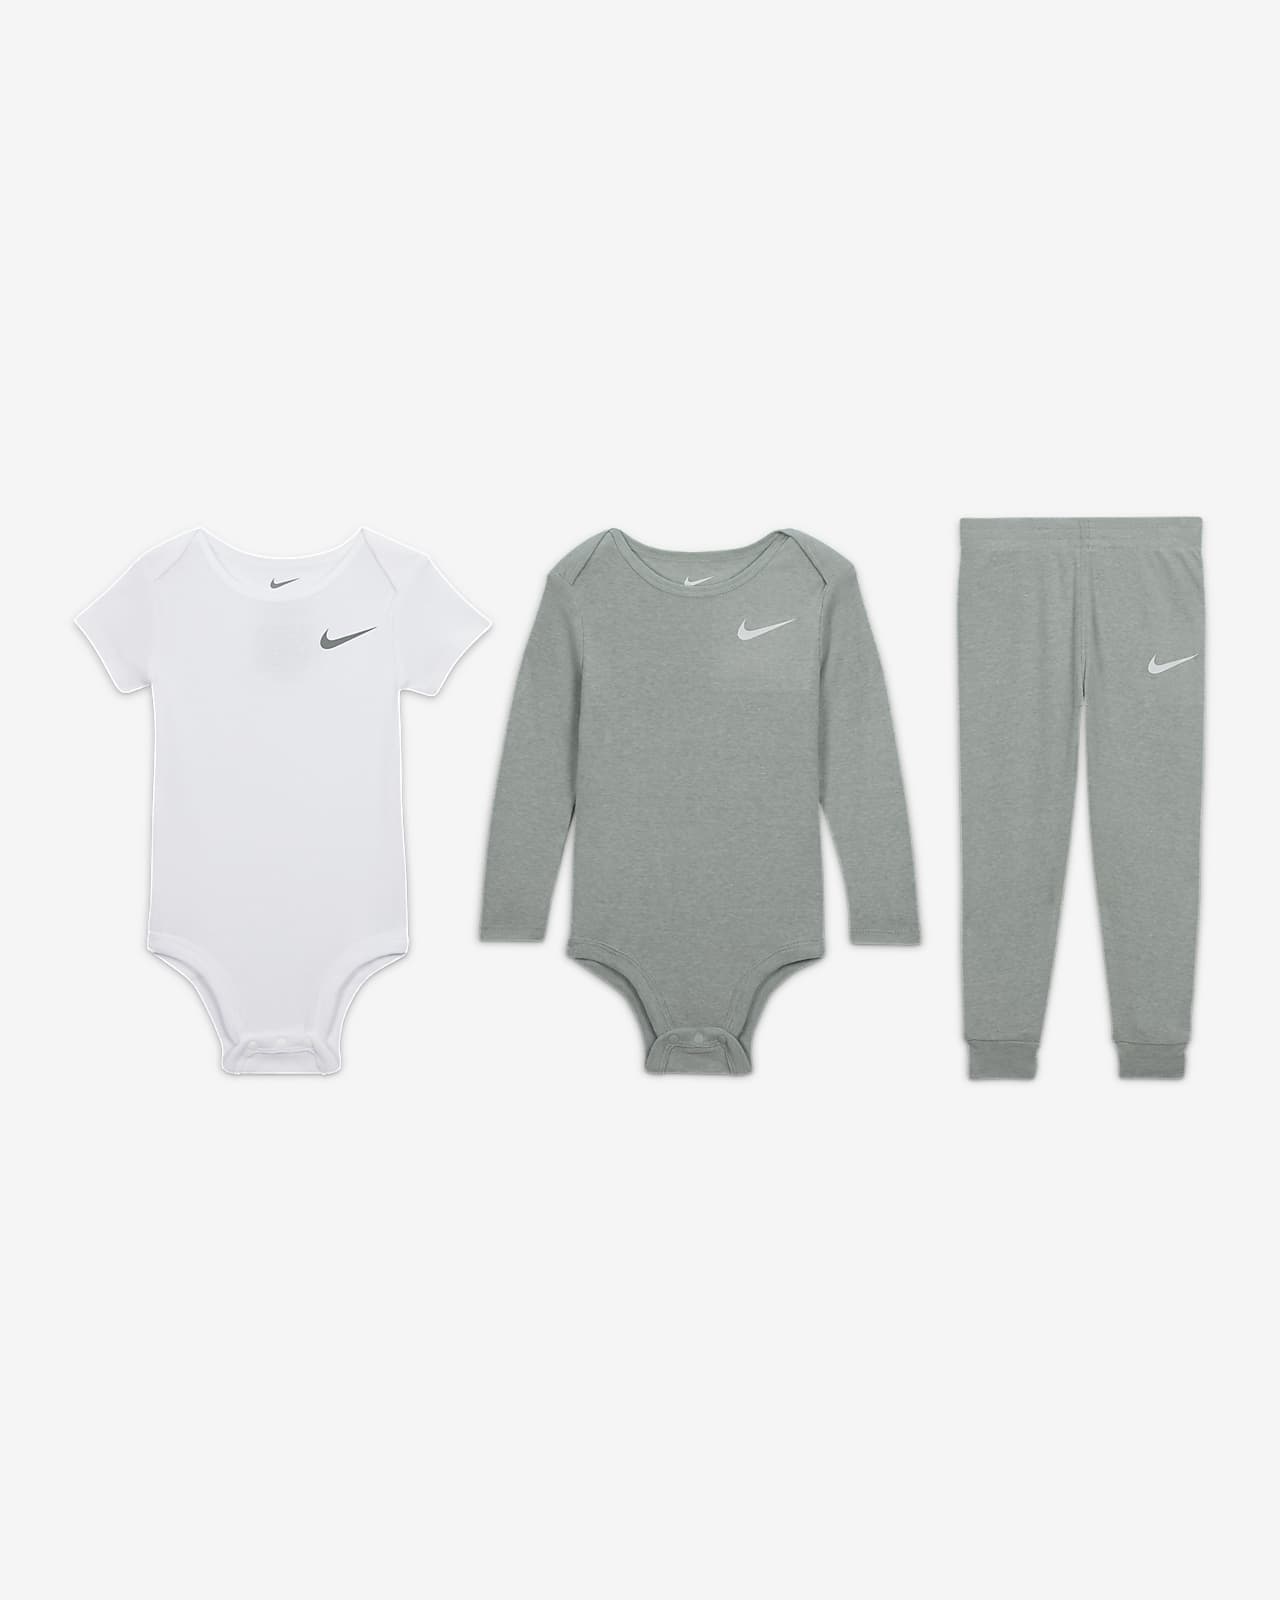 3-Piece Set Pants Essentials 3-Piece Baby Nike Set.